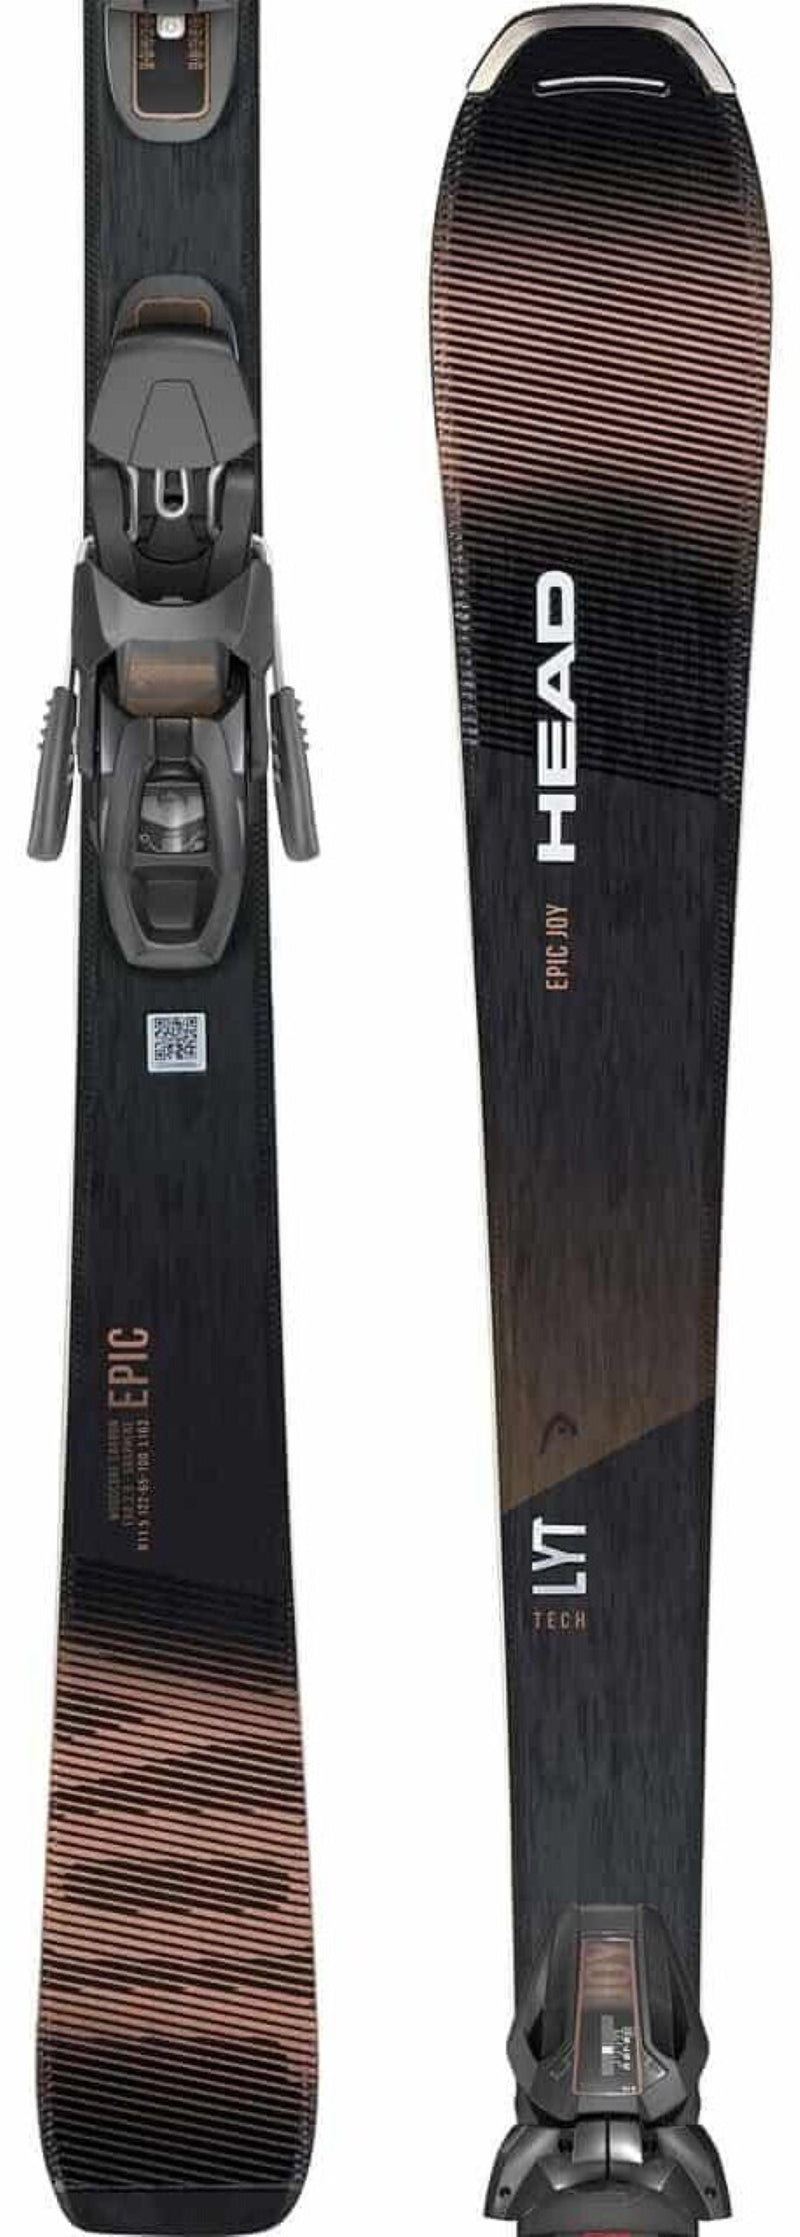 Head EPIC JOY LYT TECH Ski + Bindung Joy Eleven GW SLR black Damen Gr. 148 cm